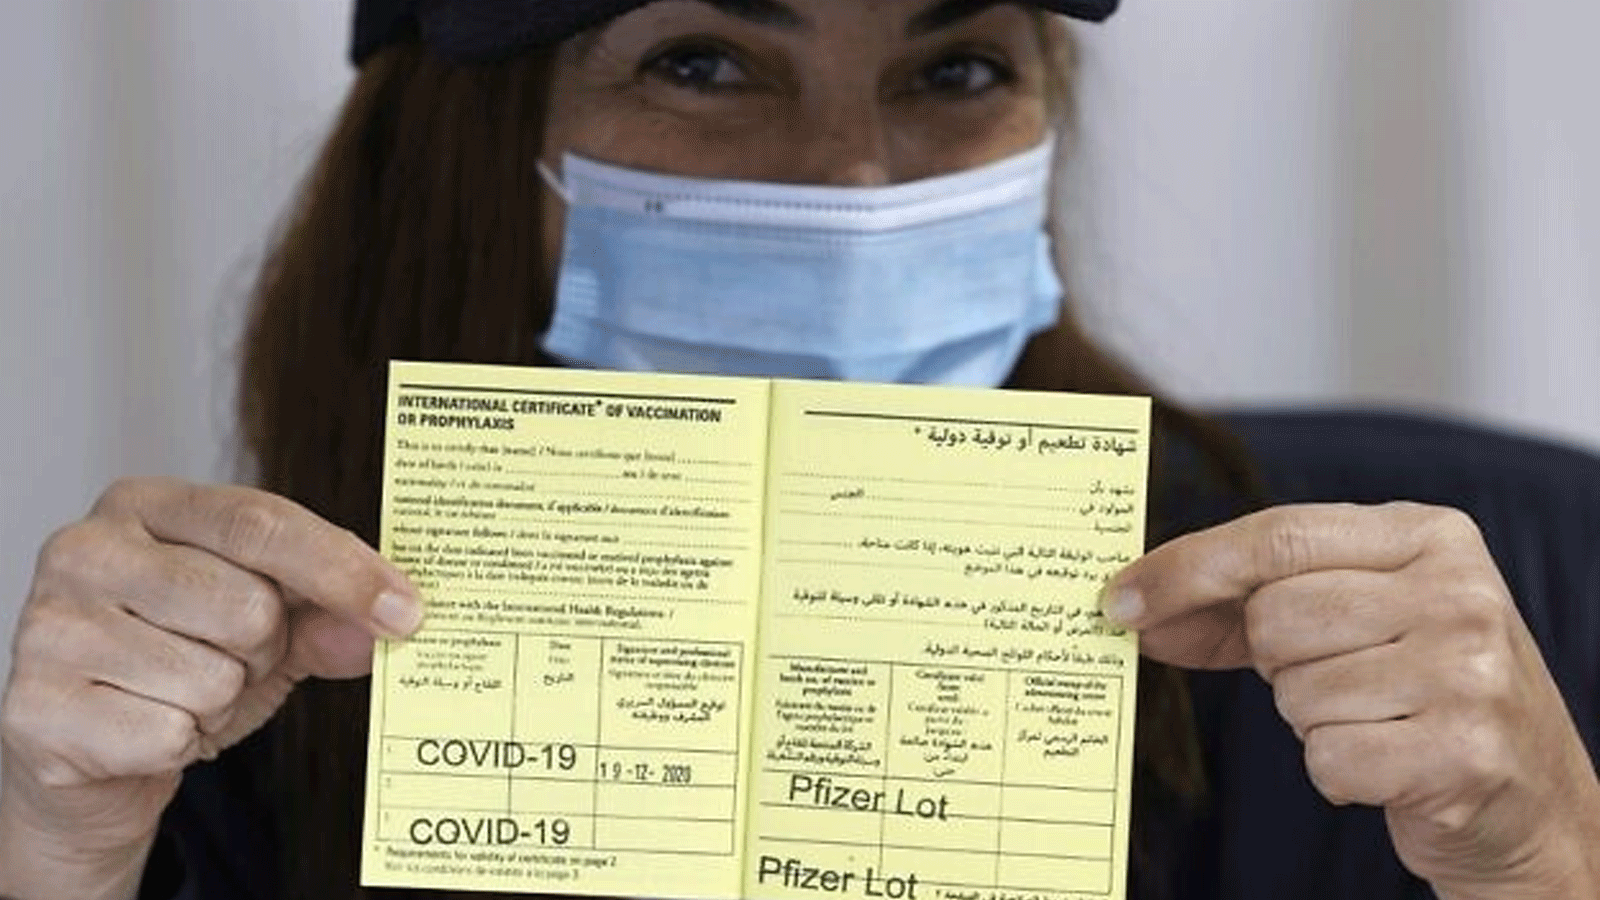 عاملة طبية اسرائيلية تعرض شهادة دولية للتطعيم ضد فيروس كورونا في مركز شيبا الطبي في رمات غان، 19 كانون الأول\ديسمبر 2020